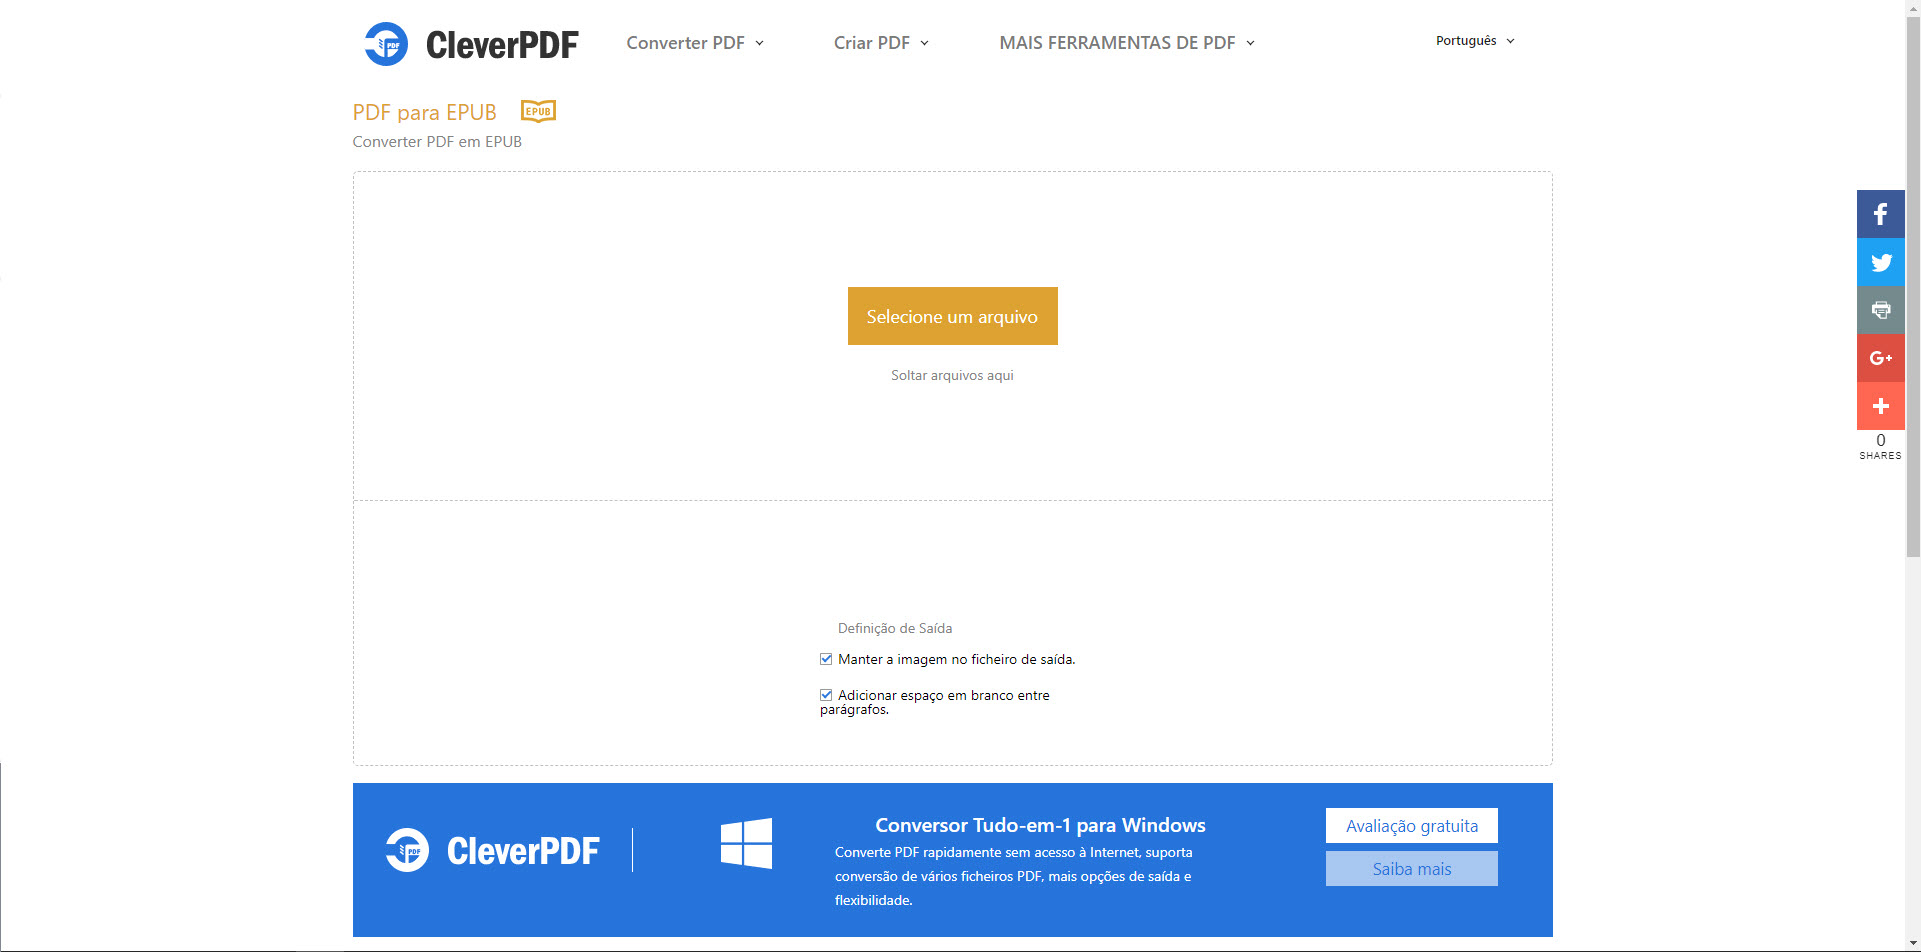 .epub to pdf converter